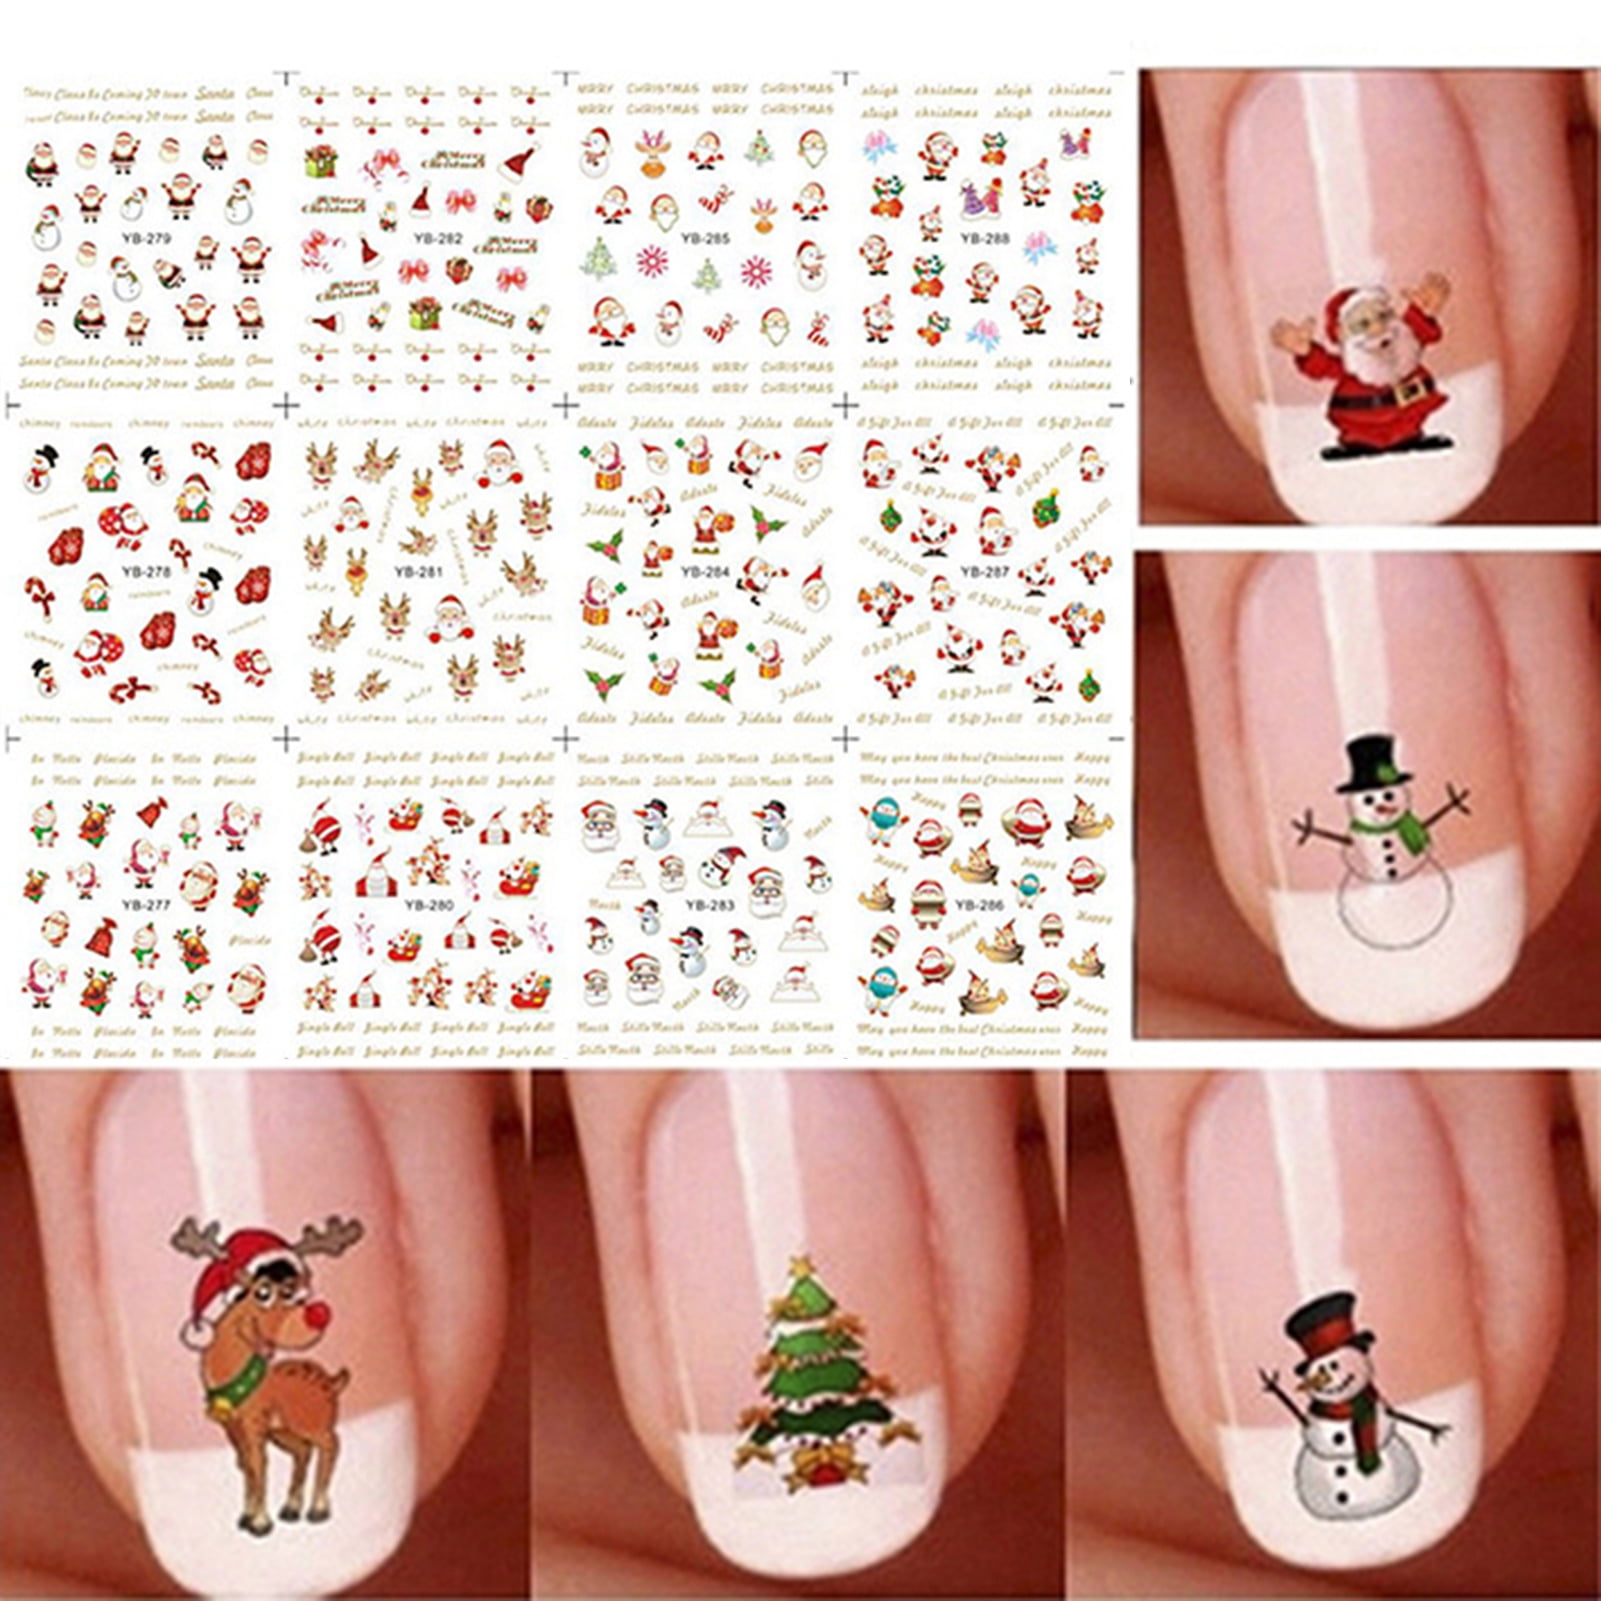 Decor Store 12Pcs Sheet Nail Sticker Christmas Self Adhesive Attractive Xmas Nail Art Decal for Fingernail 87e24cad e5ab 483e 9935 d4eab7f0ba67.3a1a27ae461e711c595f6e9255392feb